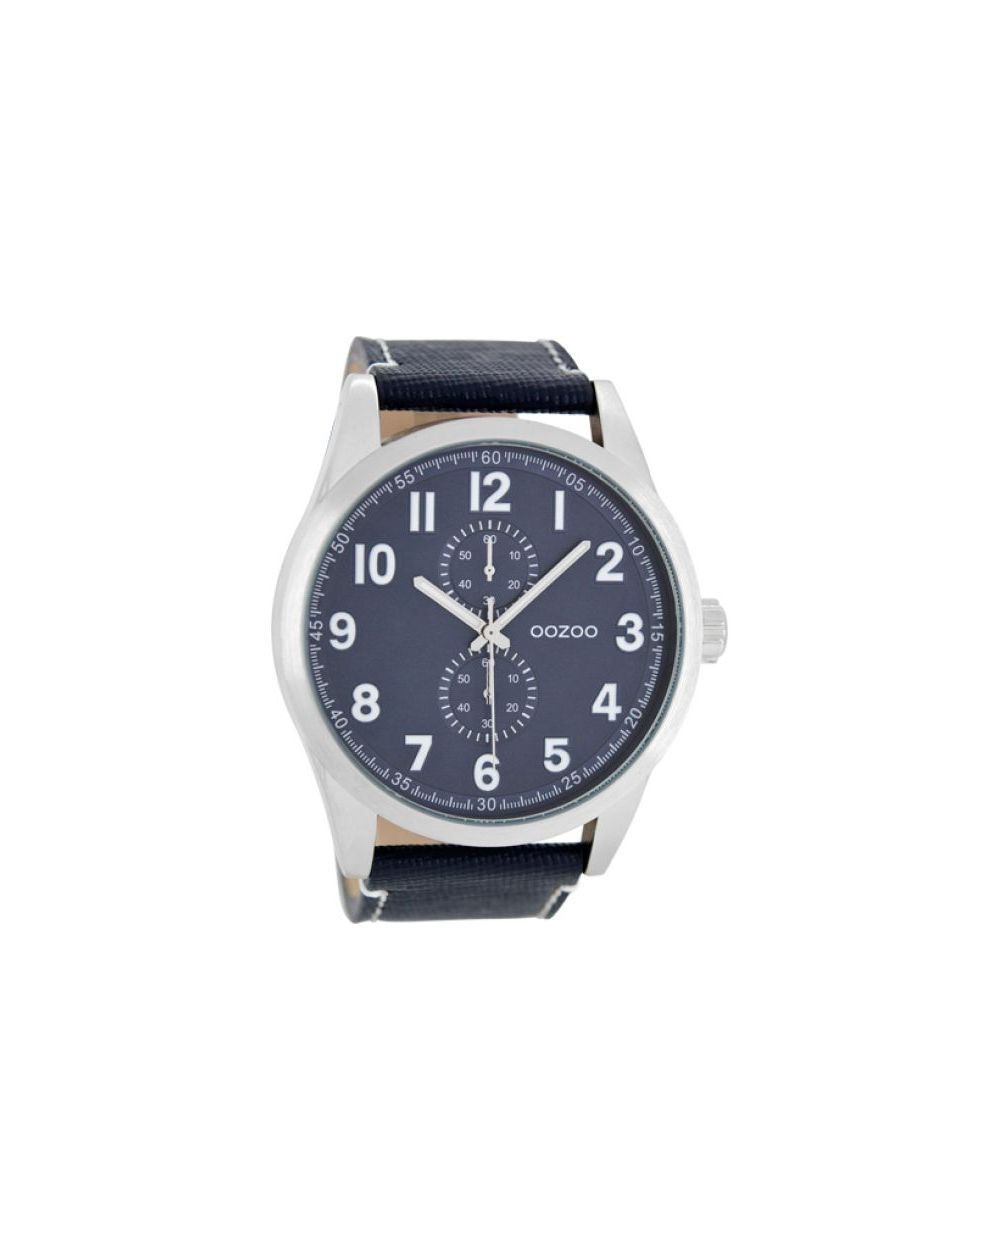 Oozoo montre/watch/horloge C8222